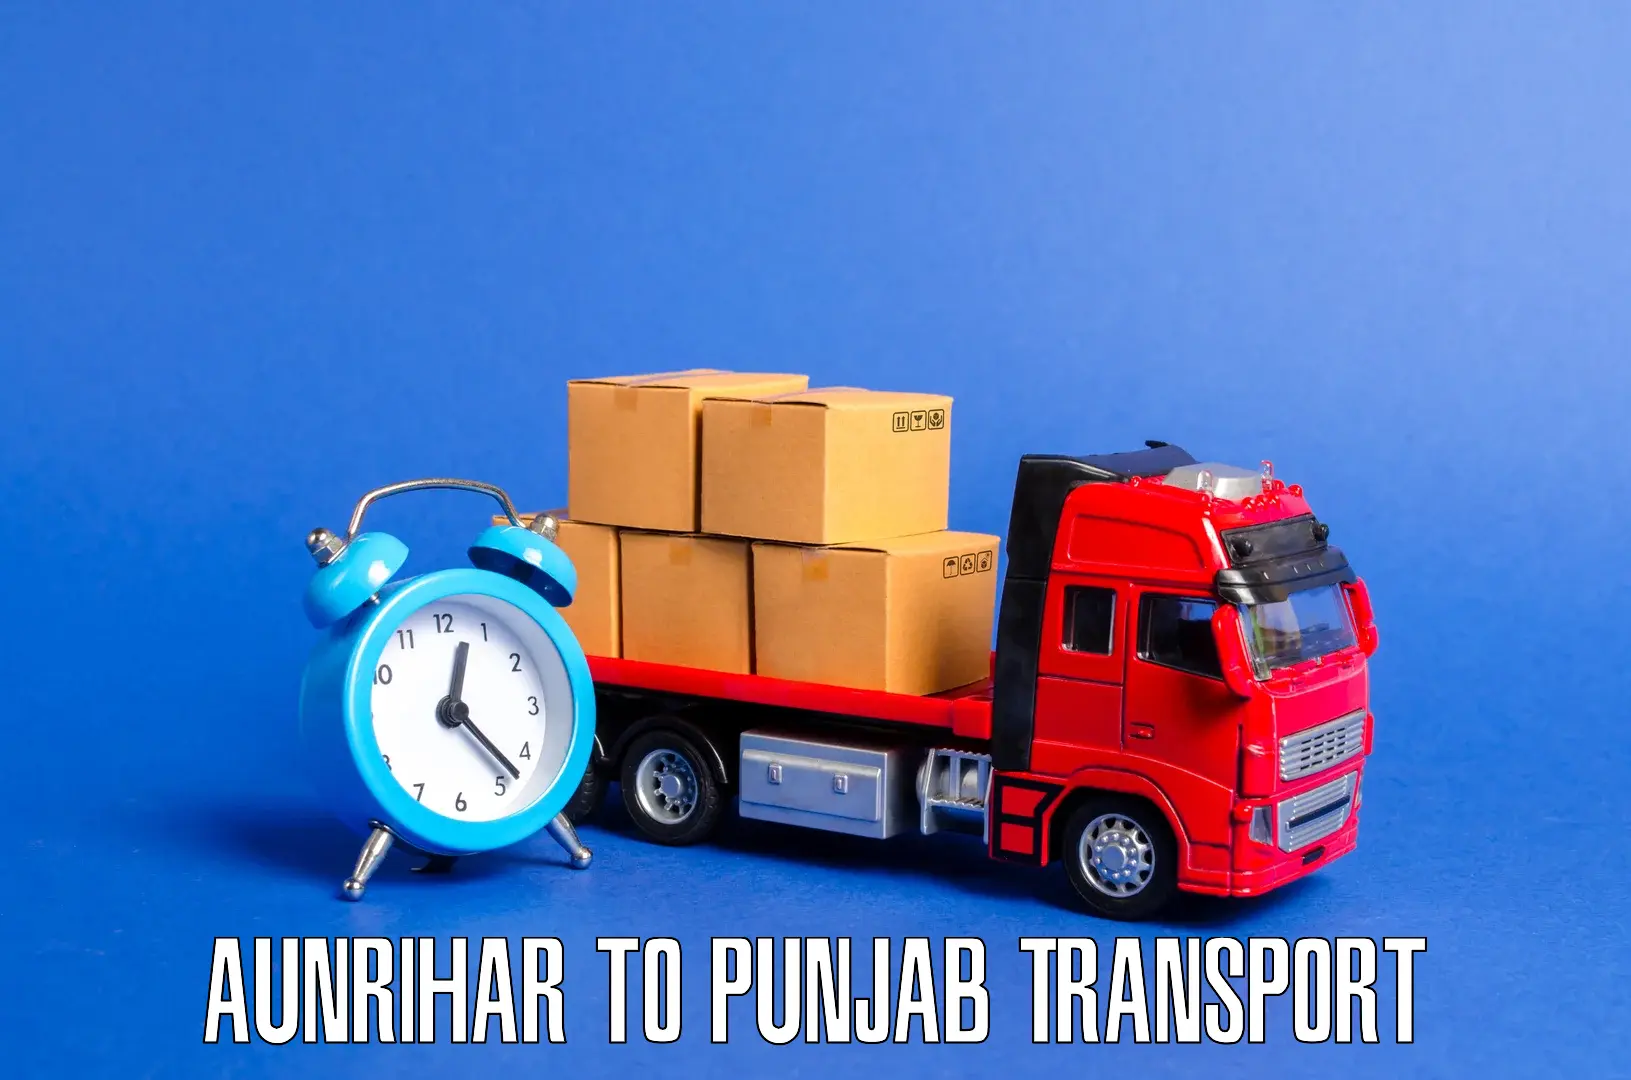 Truck transport companies in India Aunrihar to Dhuri